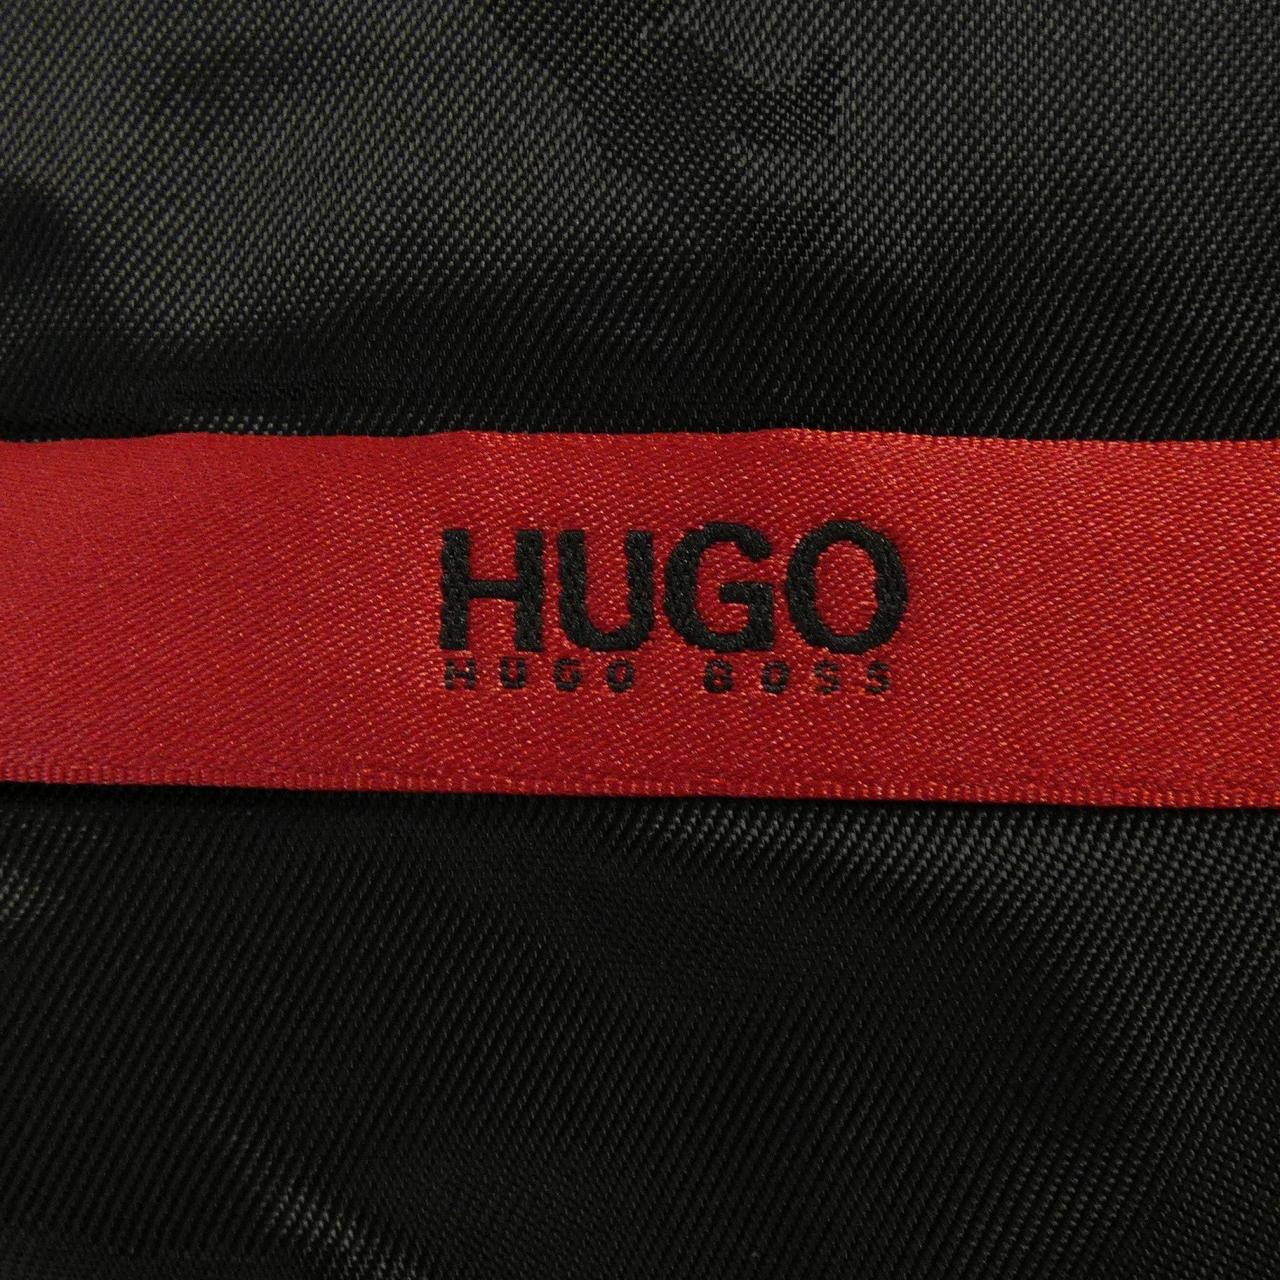 Hugo Boss HUGO BOSS suit